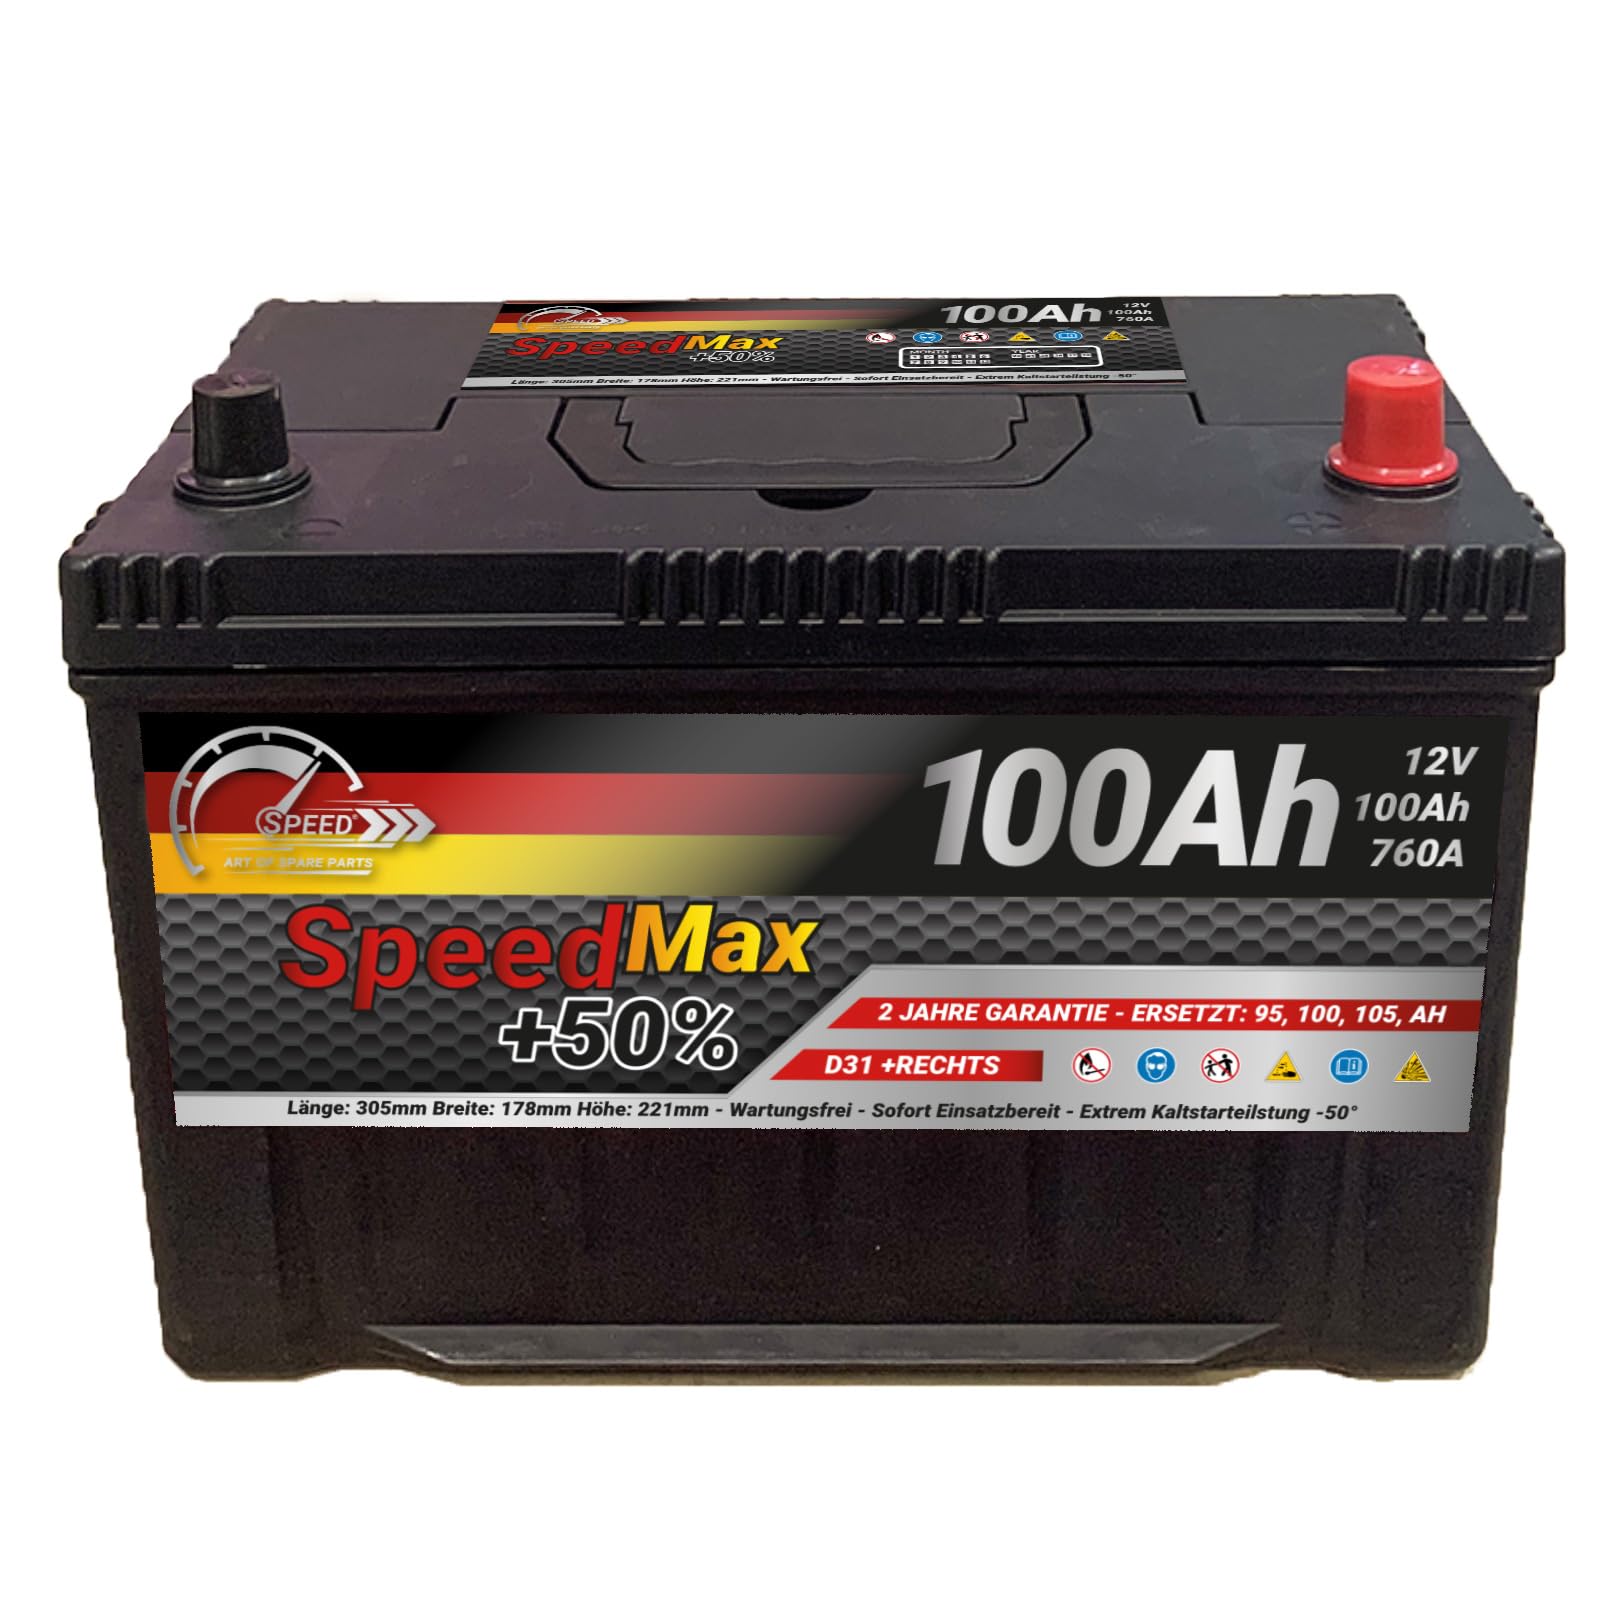 Autobatterie Starterbatterie D31 Speed Max 100Ah 760A + Dx 12v G28 Truck LKW PKW von SMC